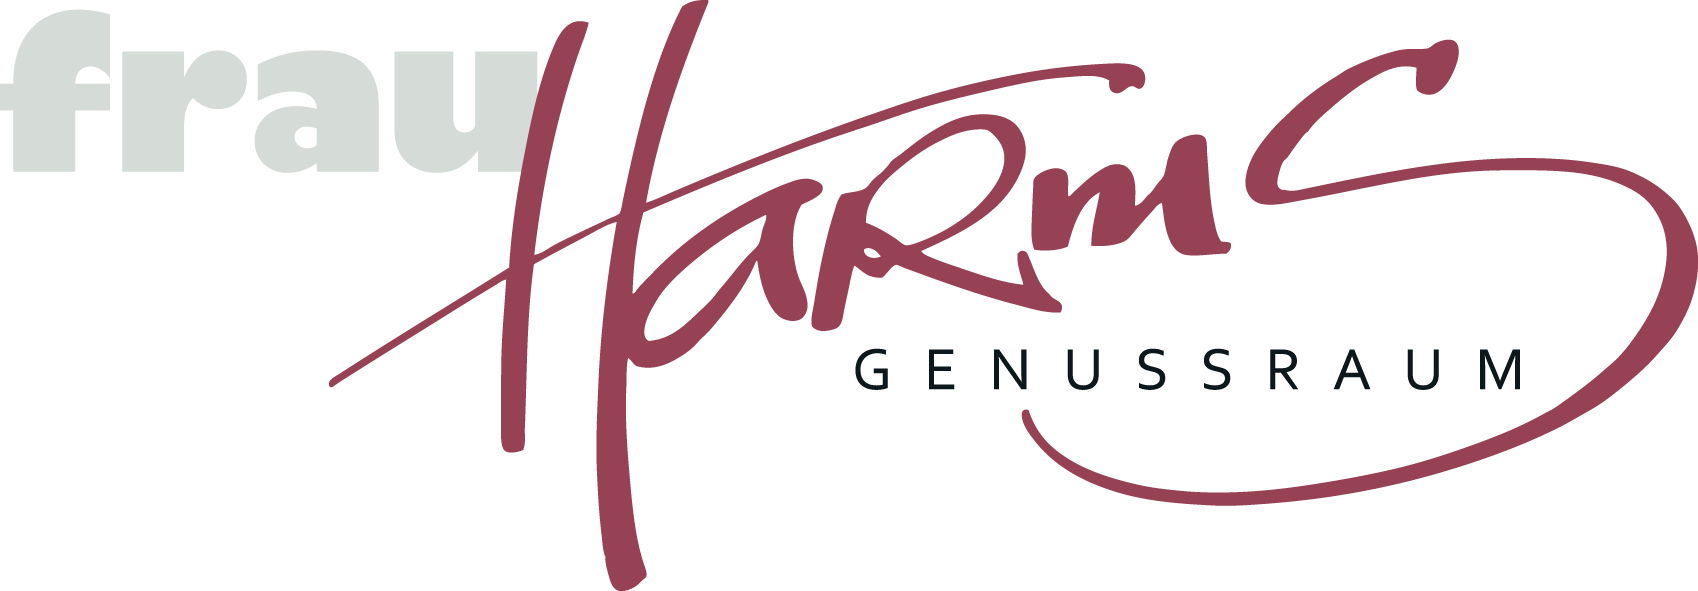 Harms-Genusshandwerkerei-Logo-png